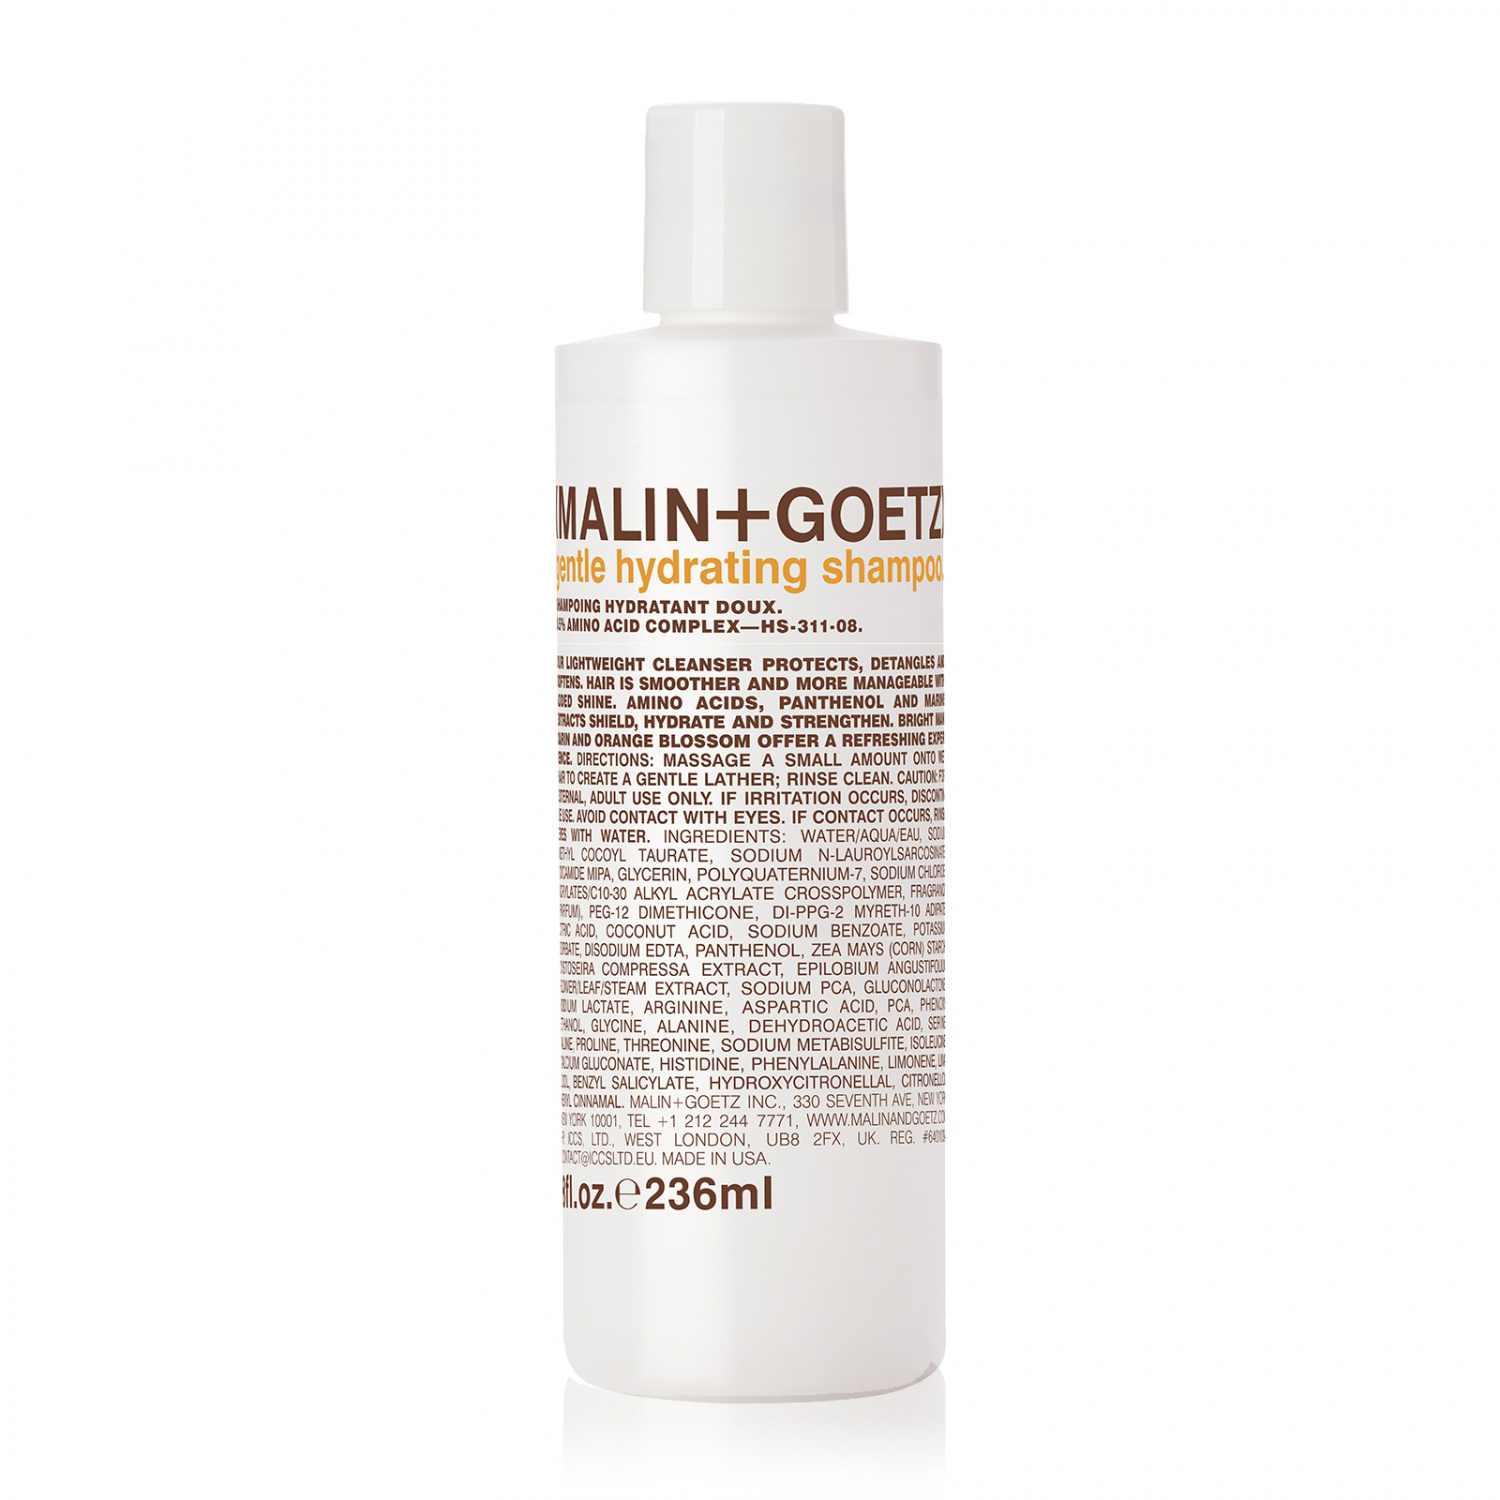 Malin+Goetz Gentle Hydrating Shampoo 236ml - интернет-магазин профессиональной косметики Spadream, изображение 32998